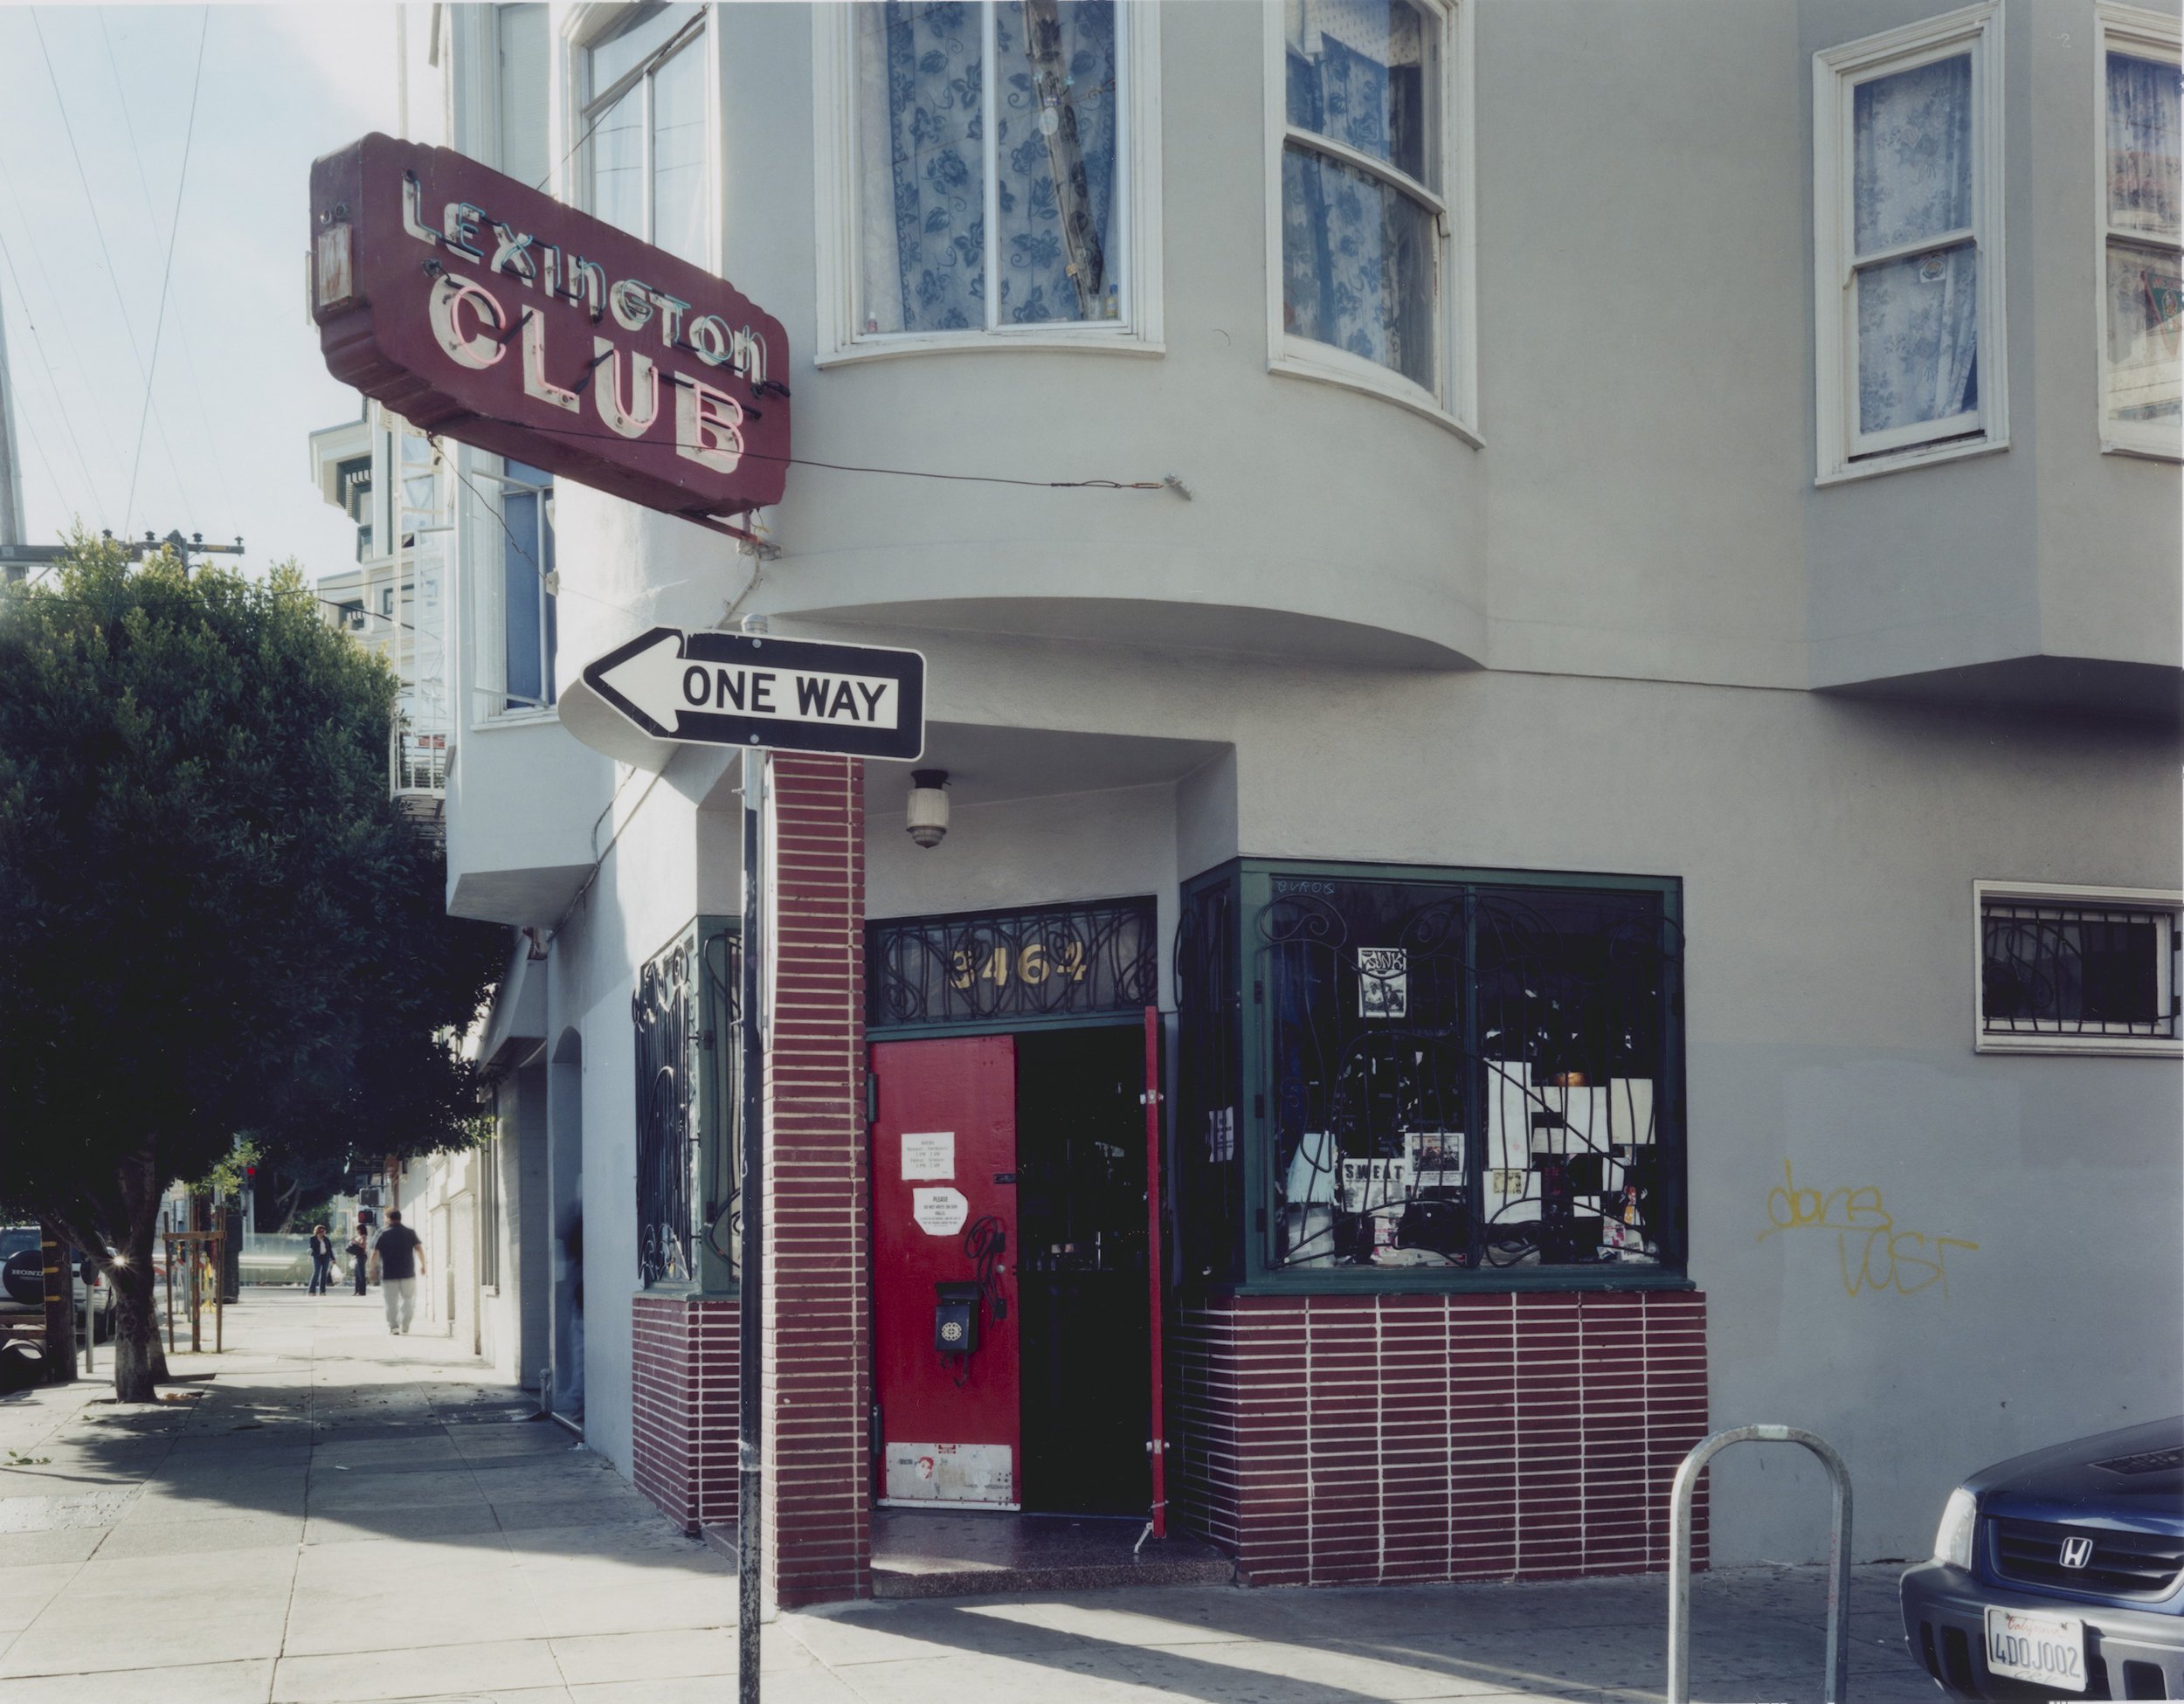  Lexington Club, San Francisco, California, 2007 